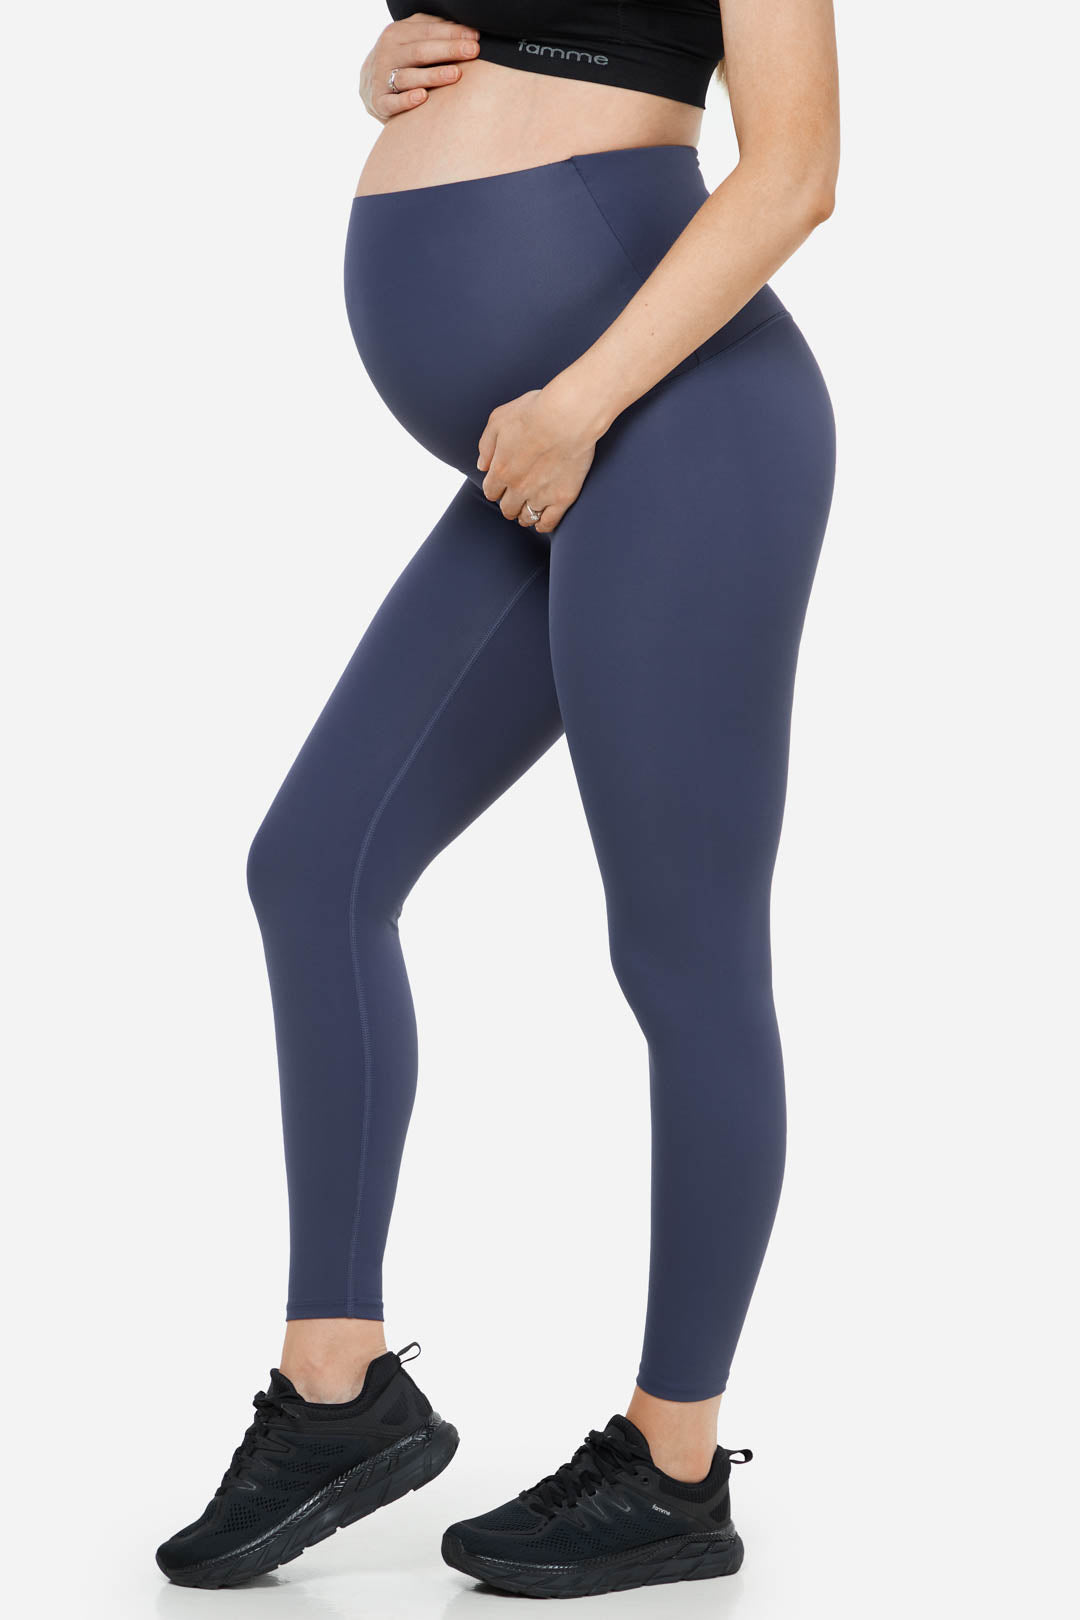 Blue Flex Maternity Leggings - for dame - Famme - Leggings